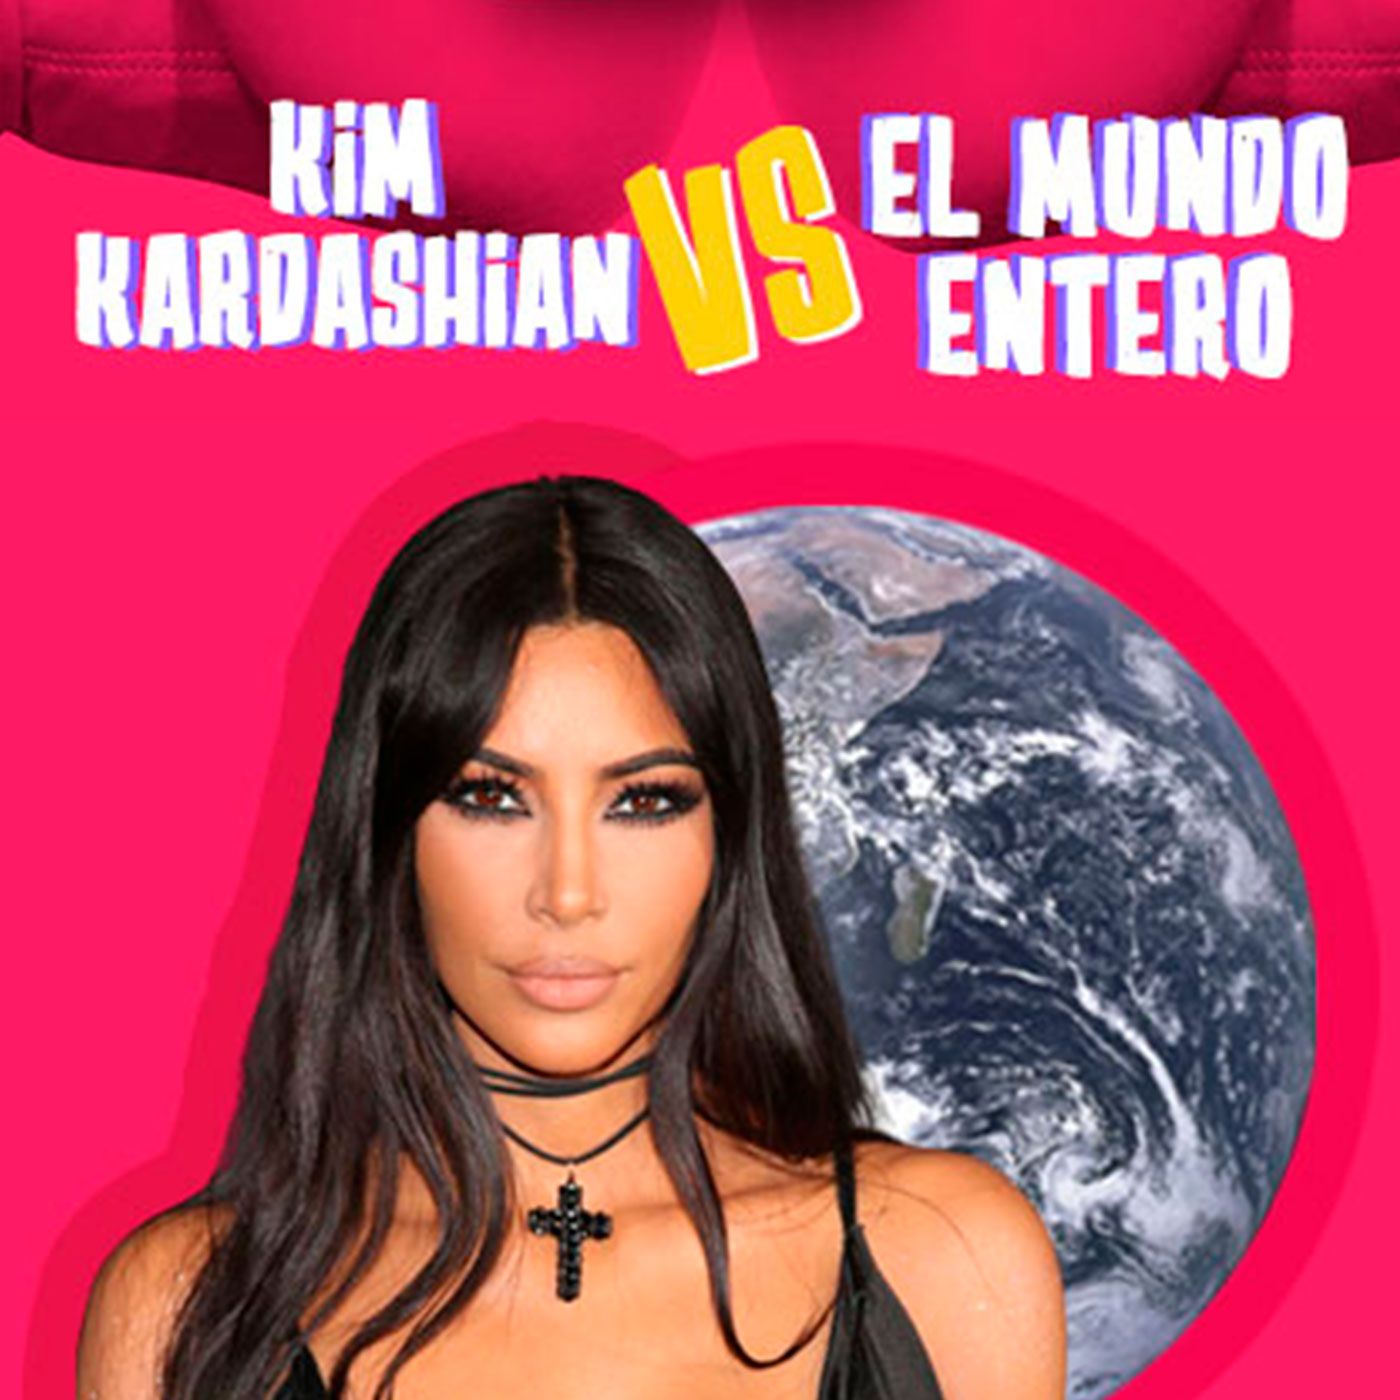 Kim Kardashian Vs El Mundo Entero: Keeping Up With The Pleitos